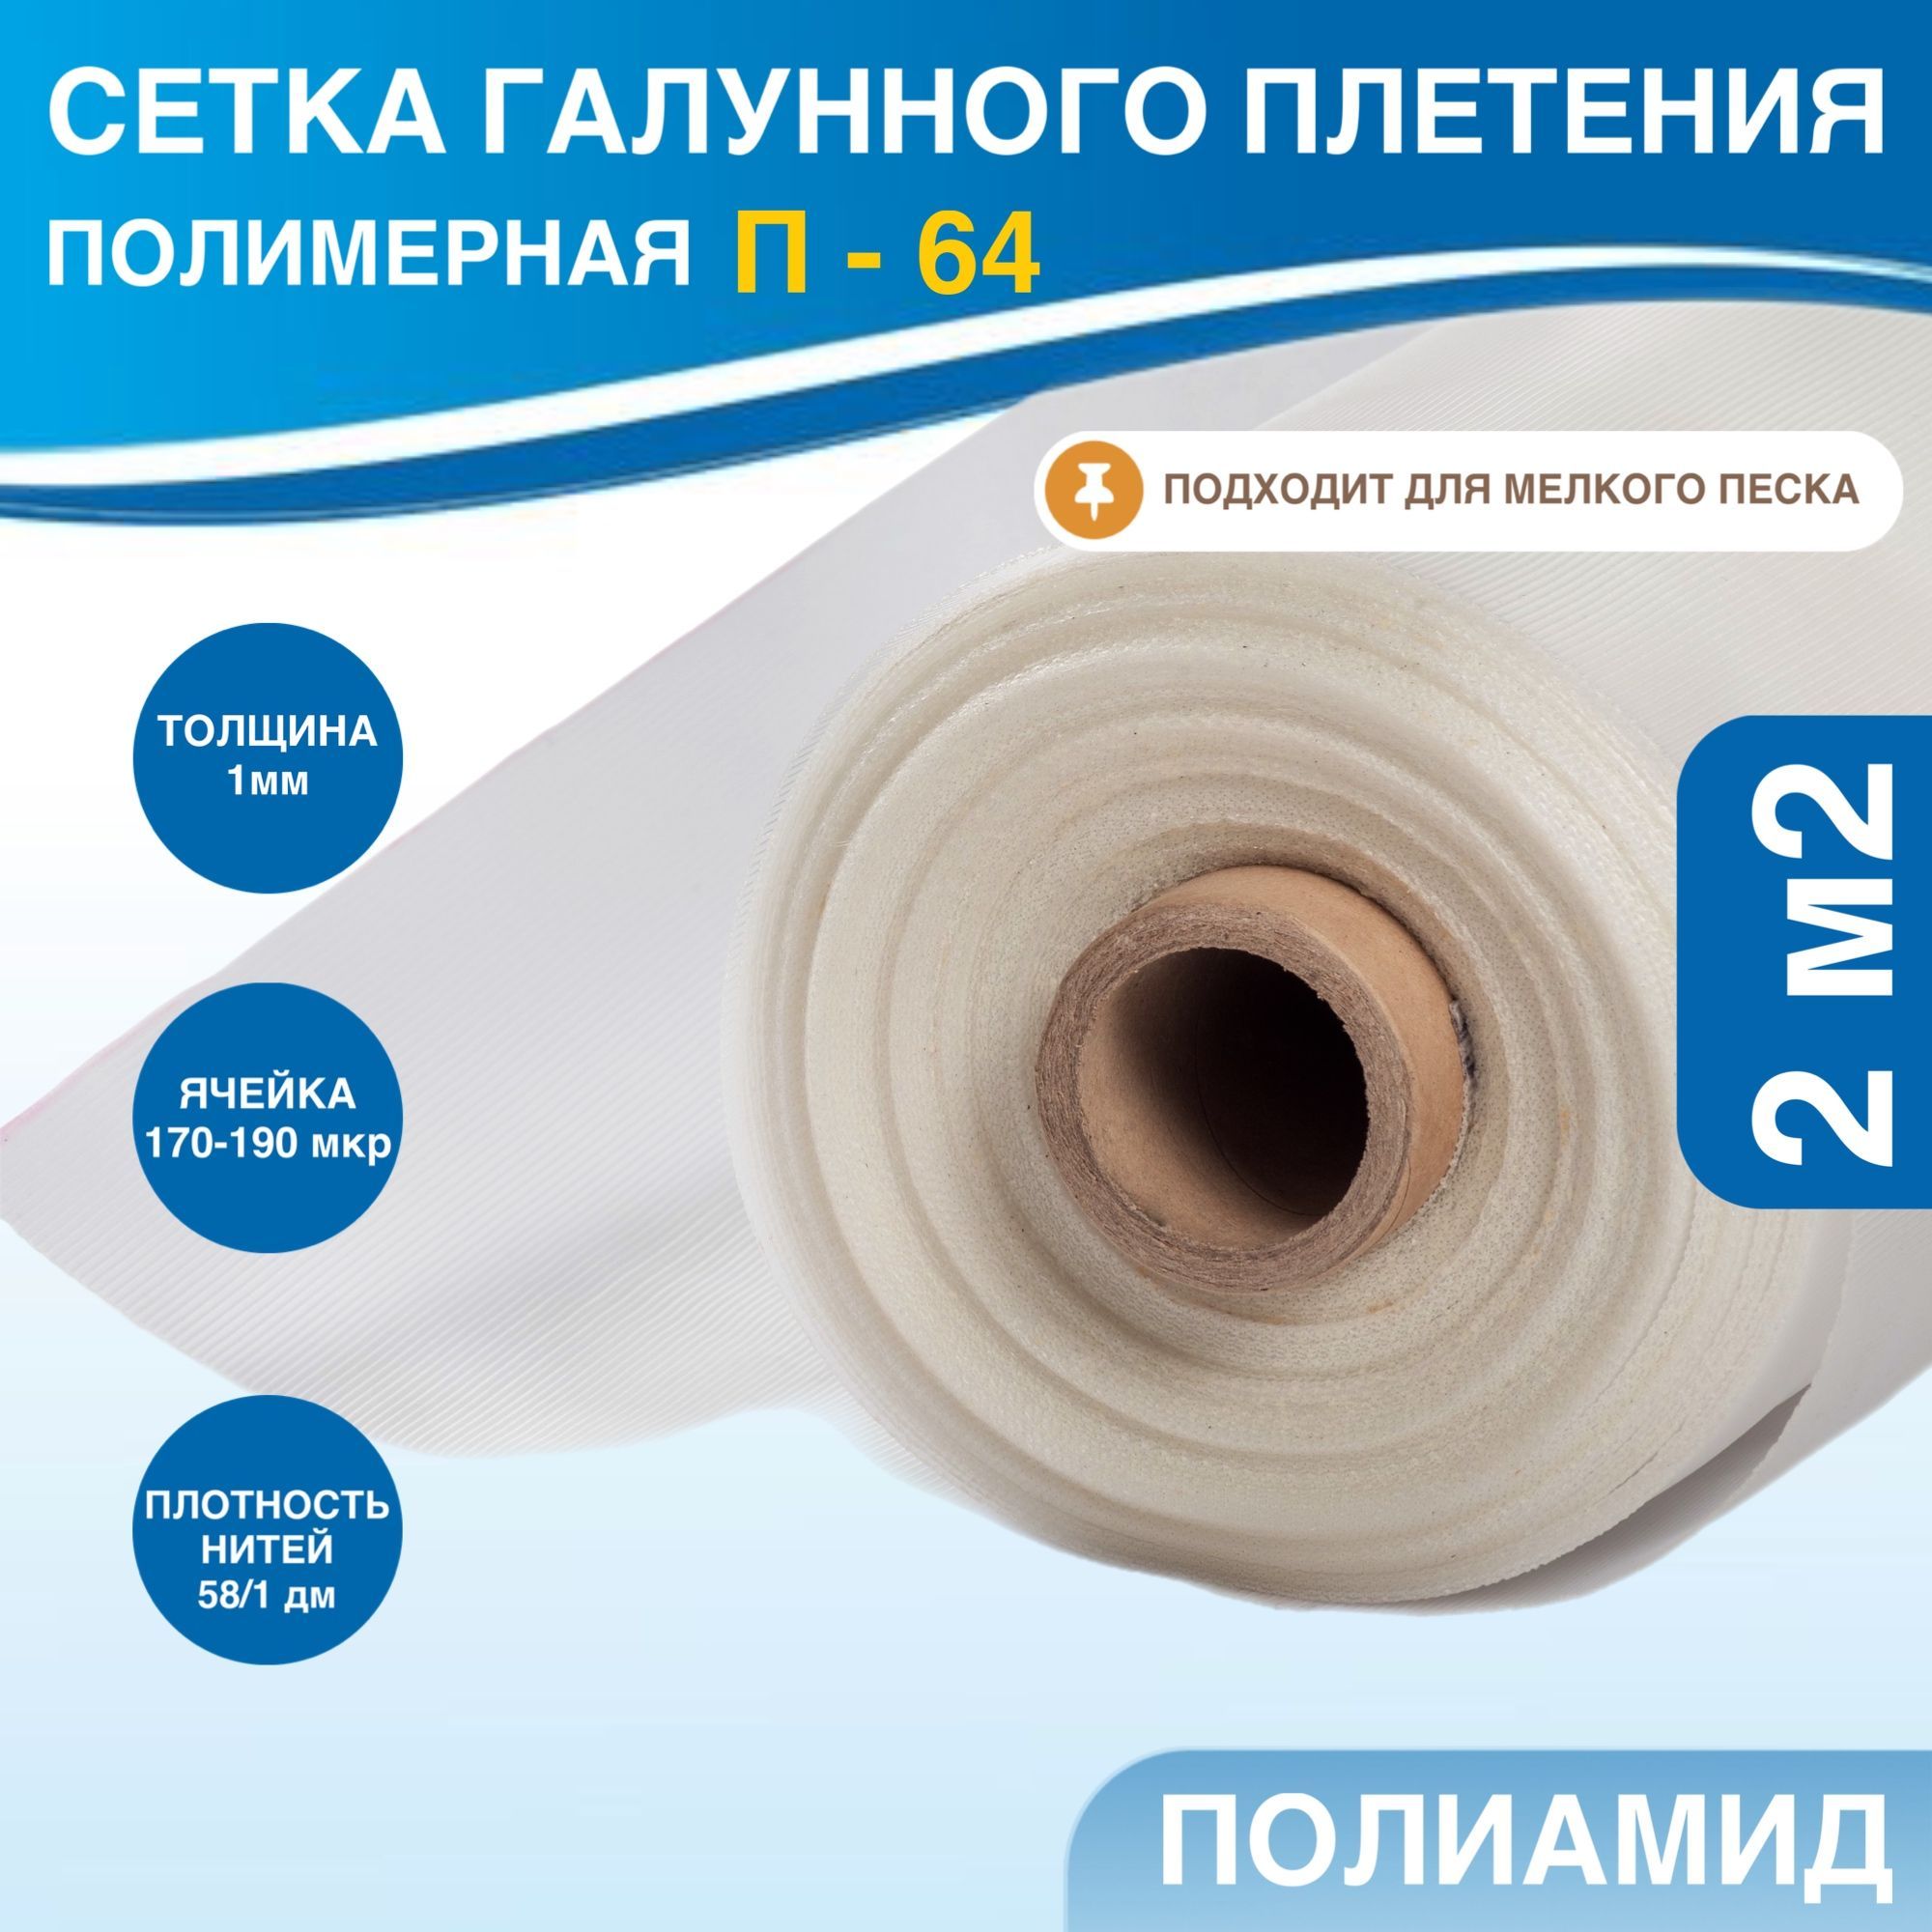 Купить сетку галунного плетения для скважин по хорошей цене в Харькове — «Скважина»